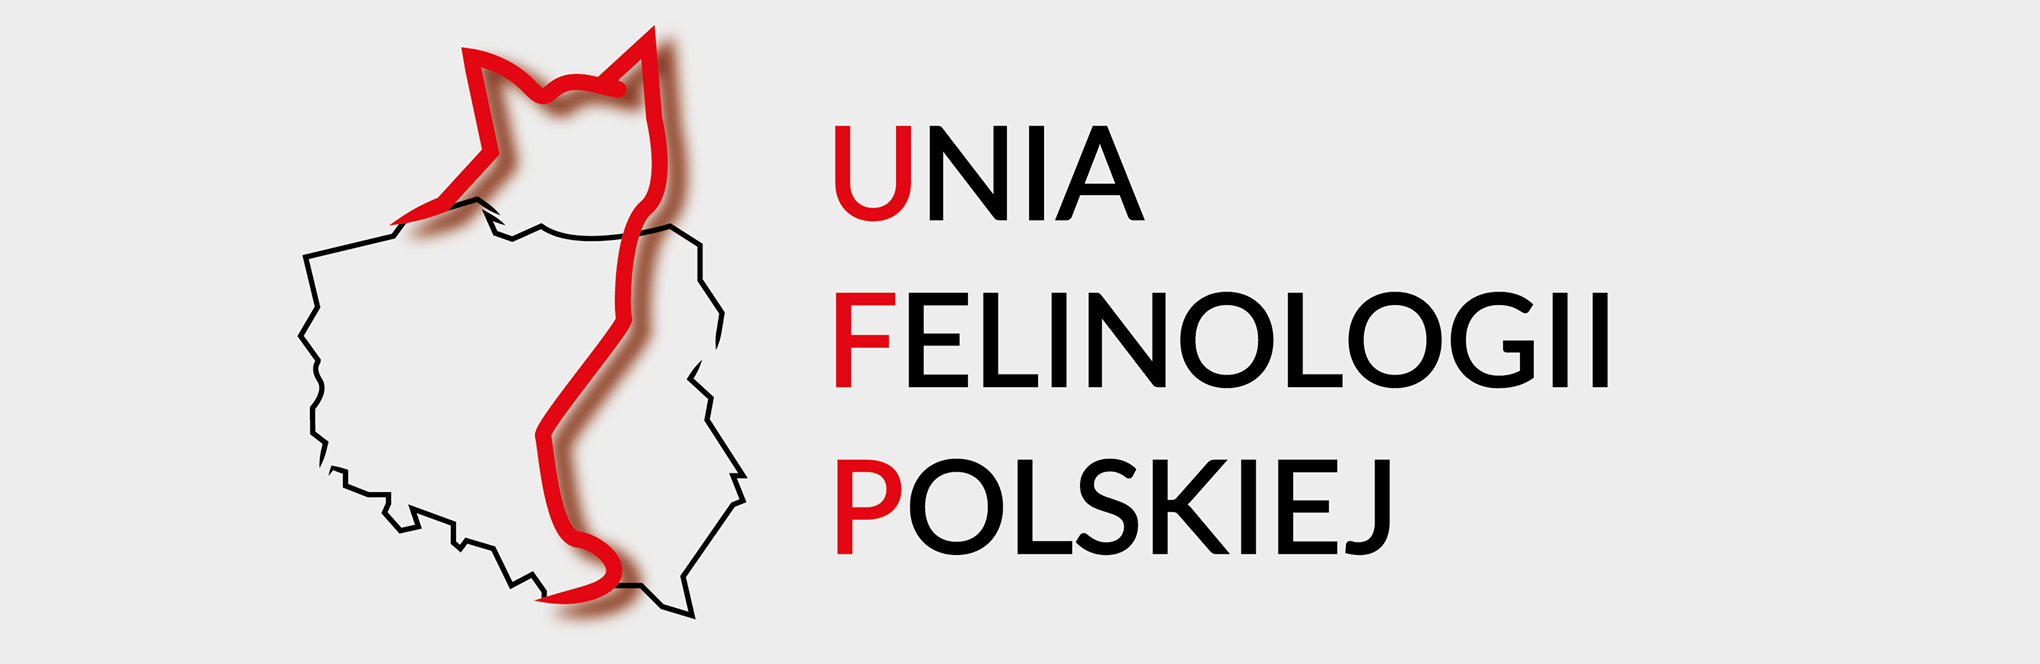 Unia Felinologii Polskiej